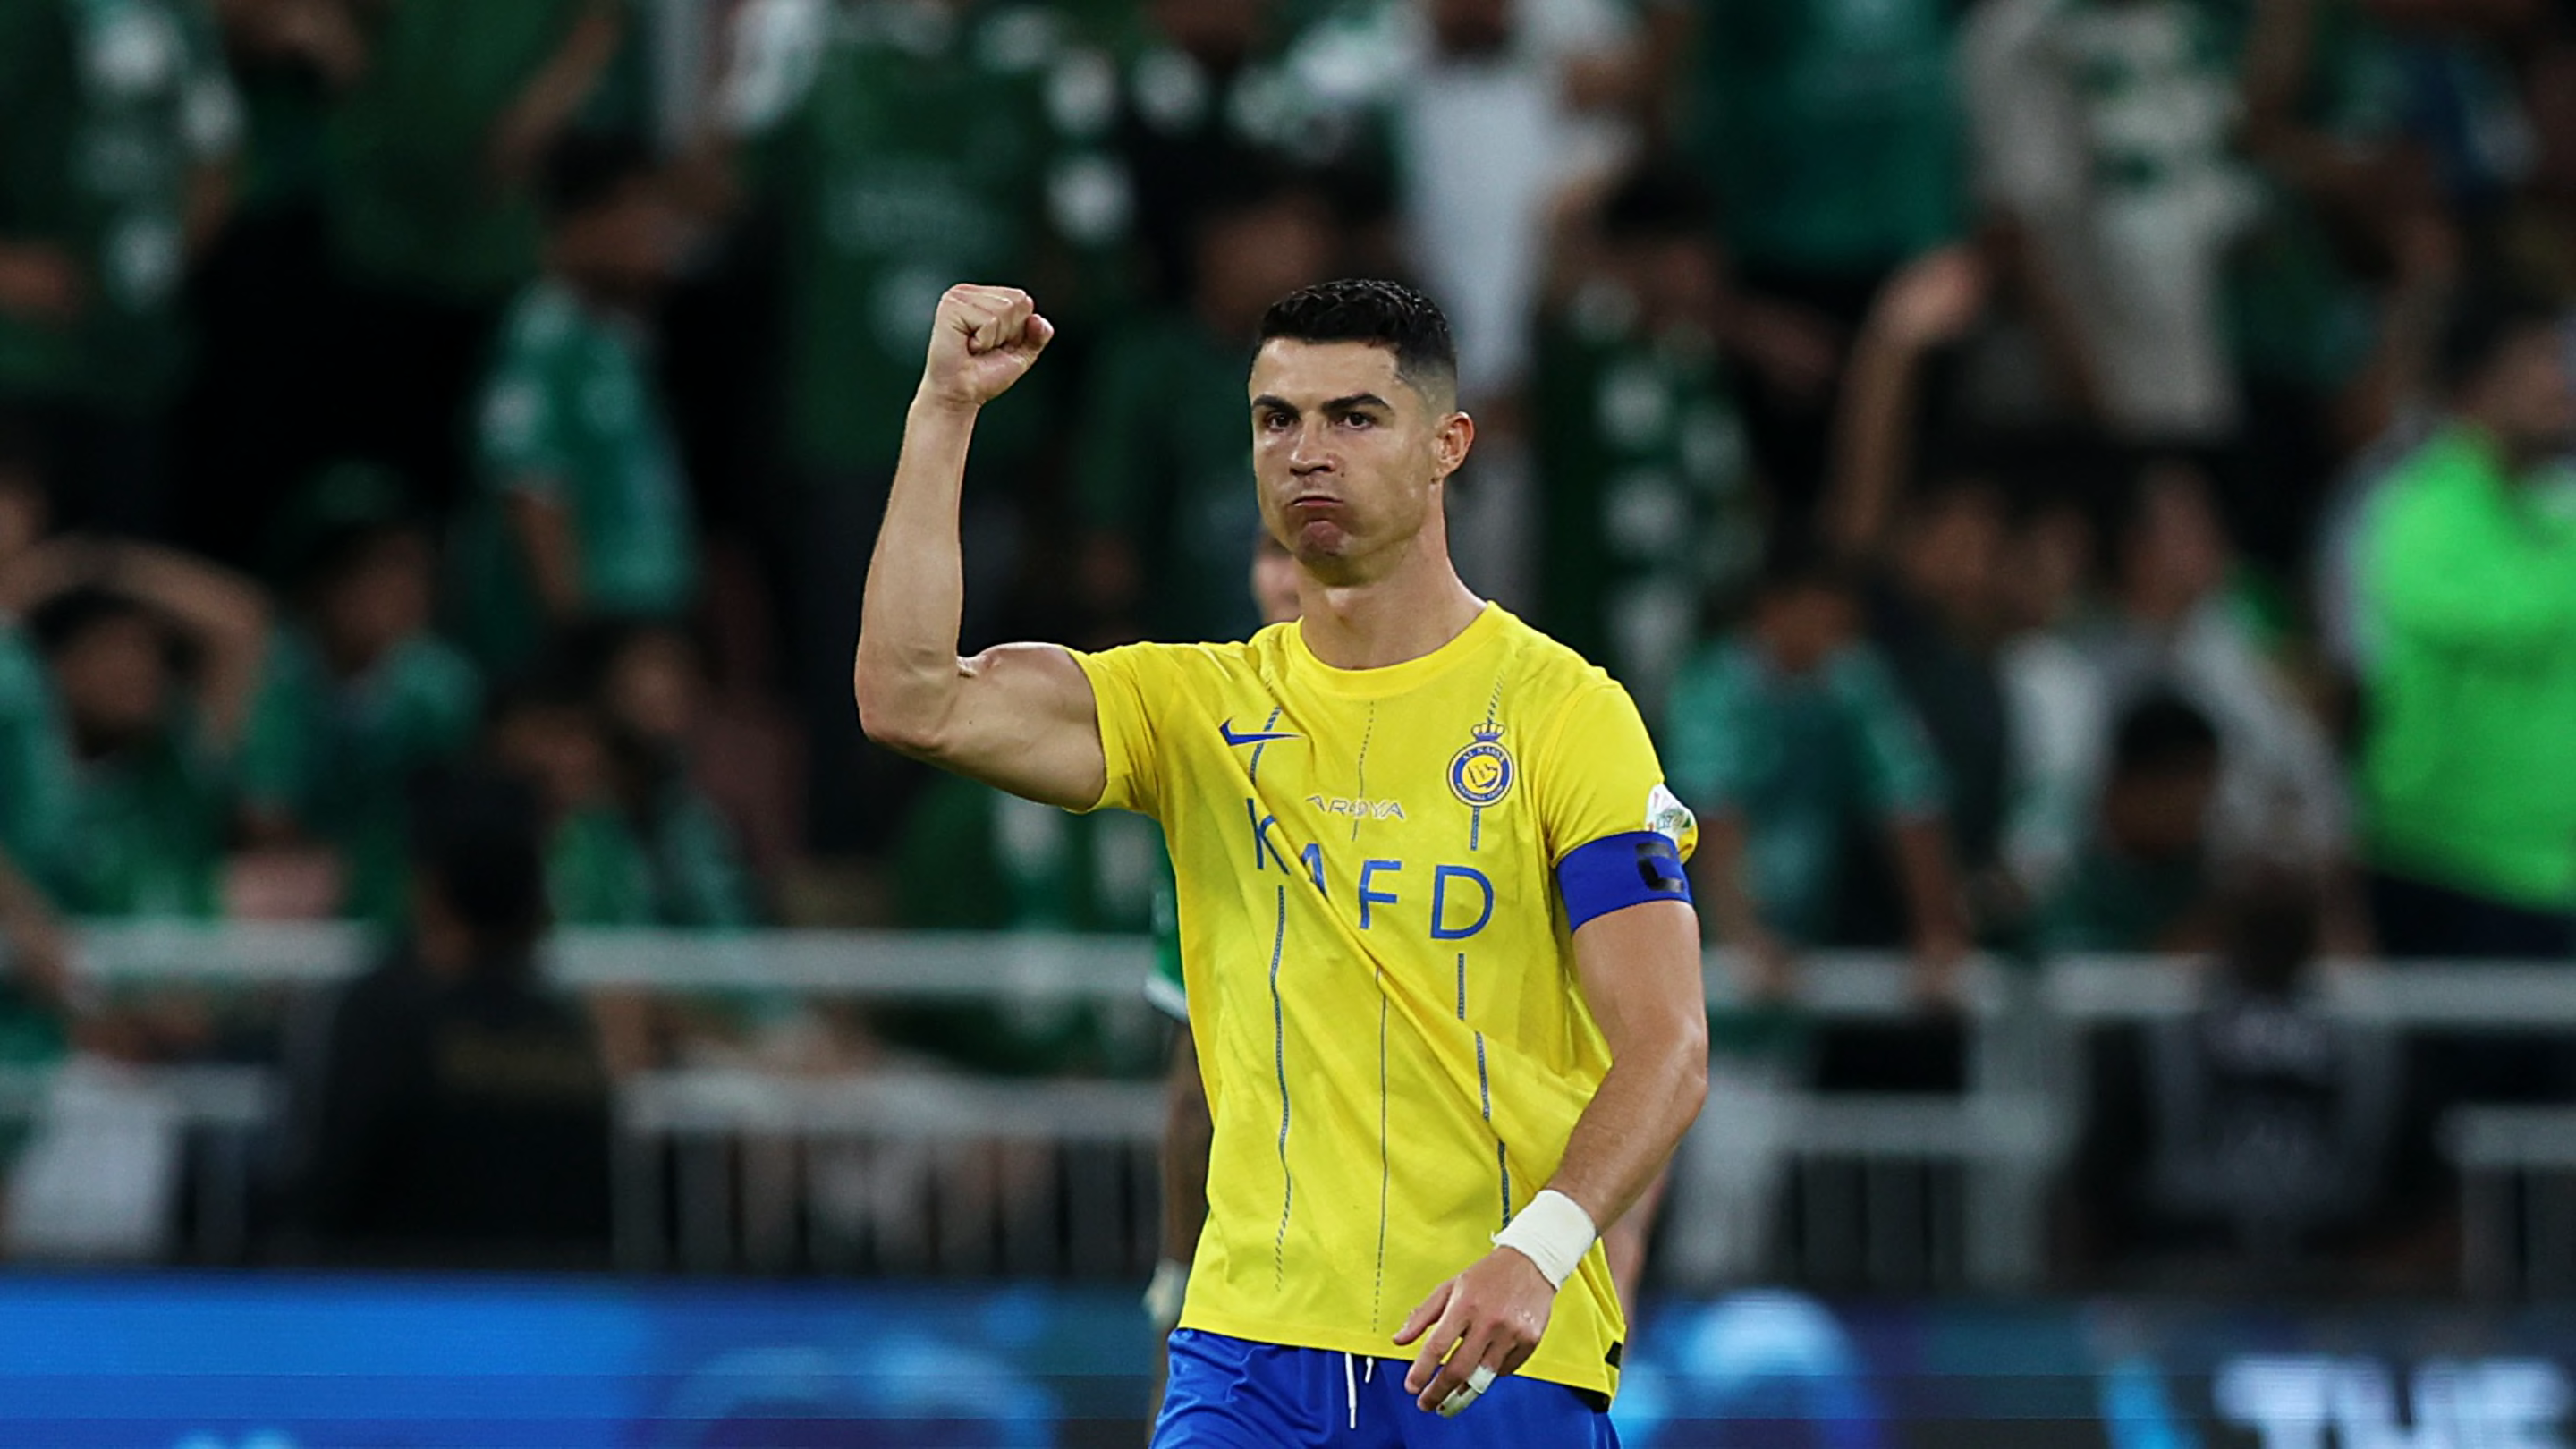 L'incroyable record que peut battre Cristiano Ronaldo s'il finit meilleur buteur de Saudi Pro League cette saison